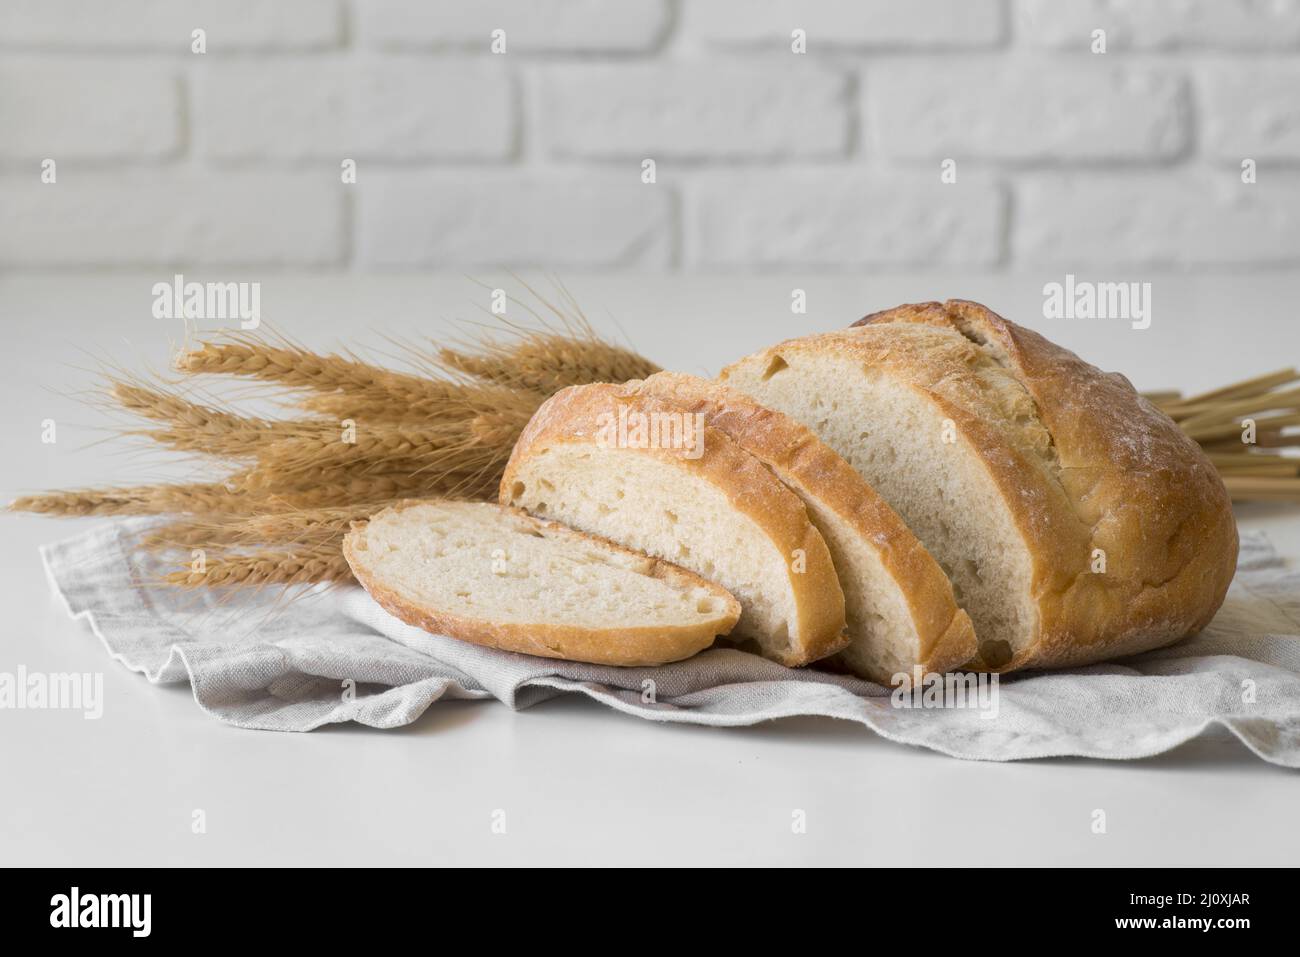 Vue de face, tranches de pain frais. Photo de haute qualité Banque D'Images